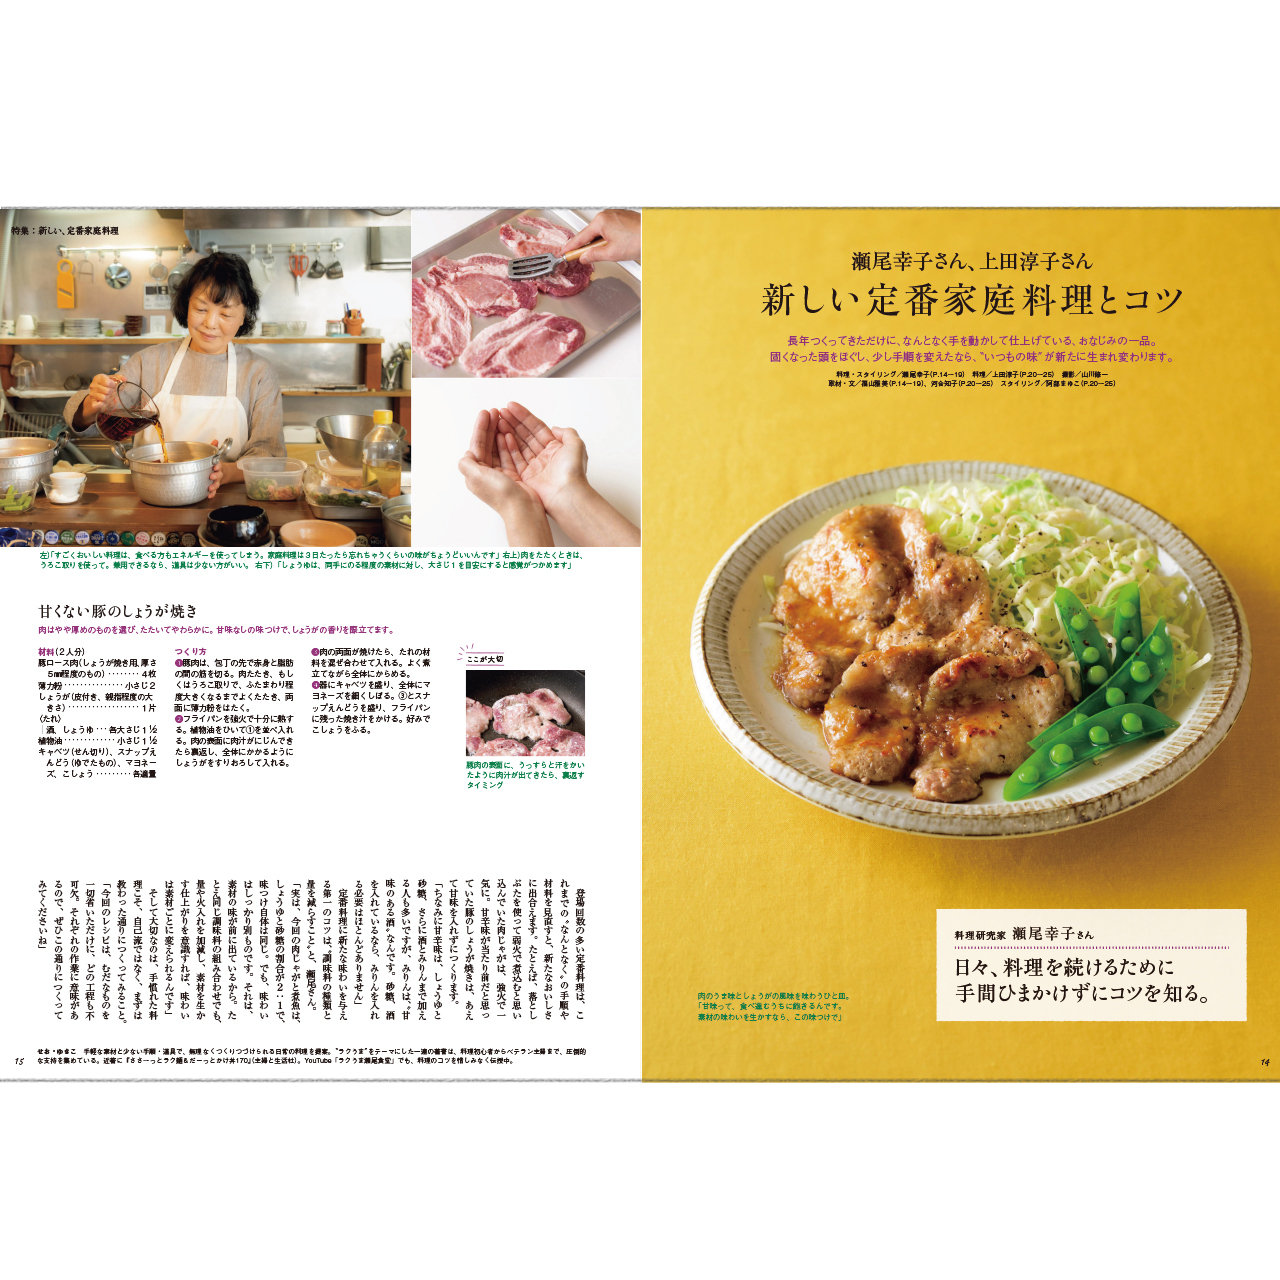 瀬尾幸子さん、上田淳子さん 新しい定番家庭料理とコツ